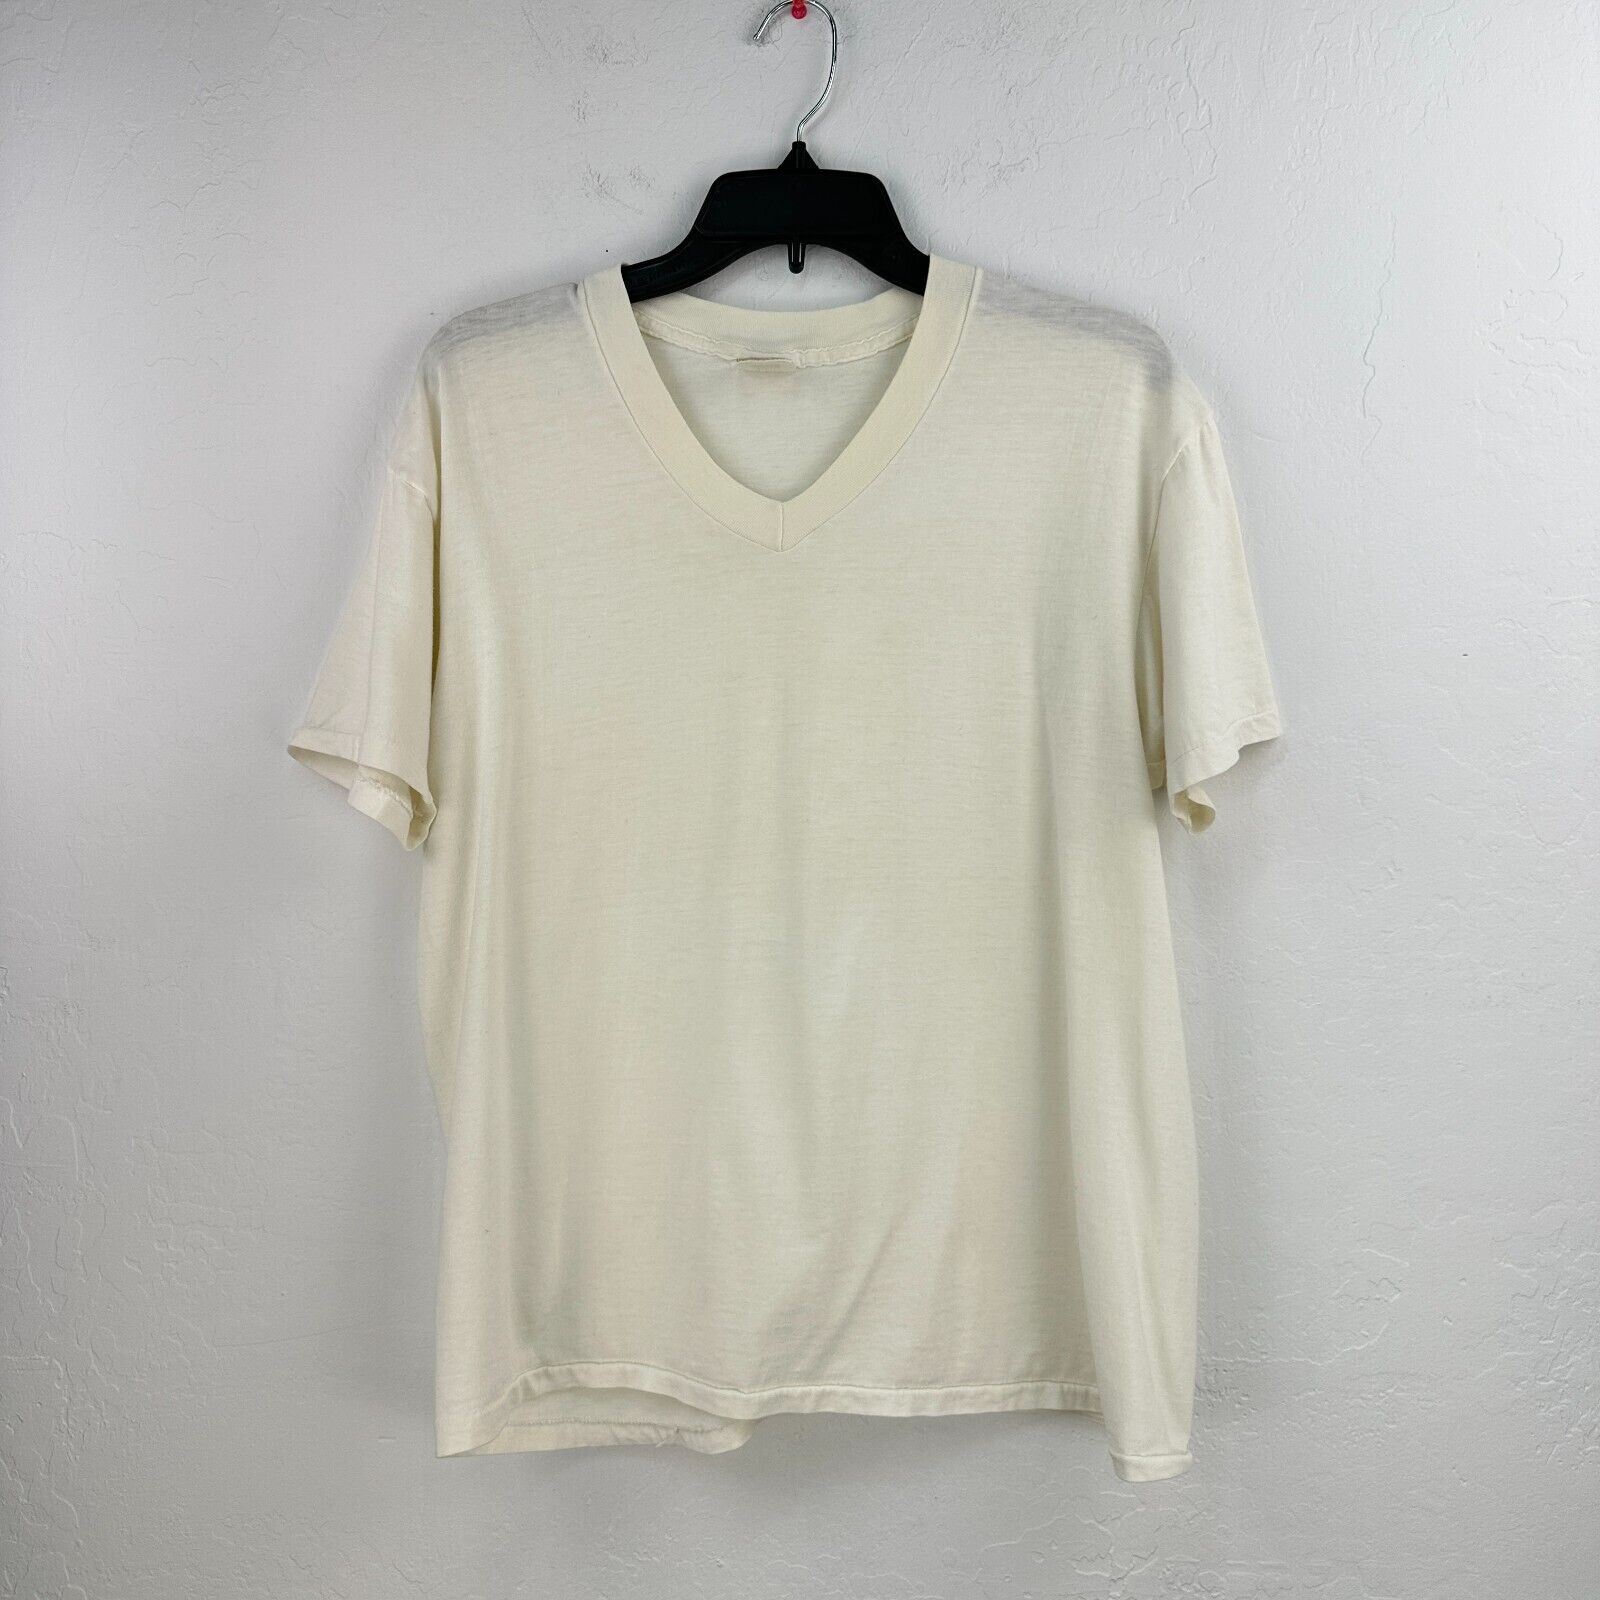 Vintage Sears Golden Comfort Tshirt Mens L White Short Sleeve Vneck Sanfor knit